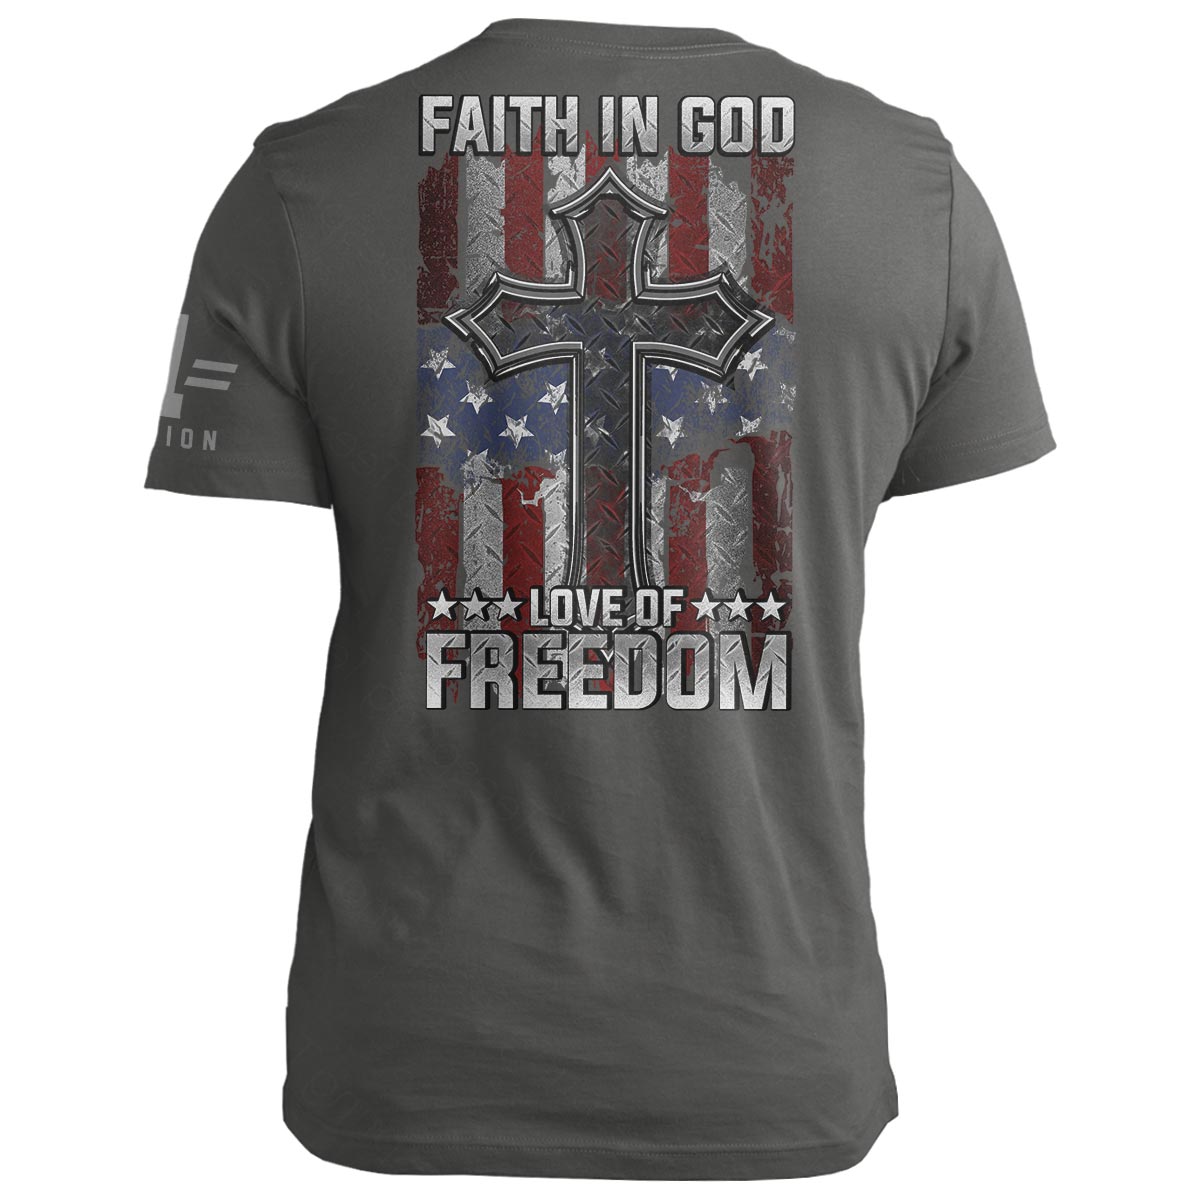 Faith in God. Love of Freedom